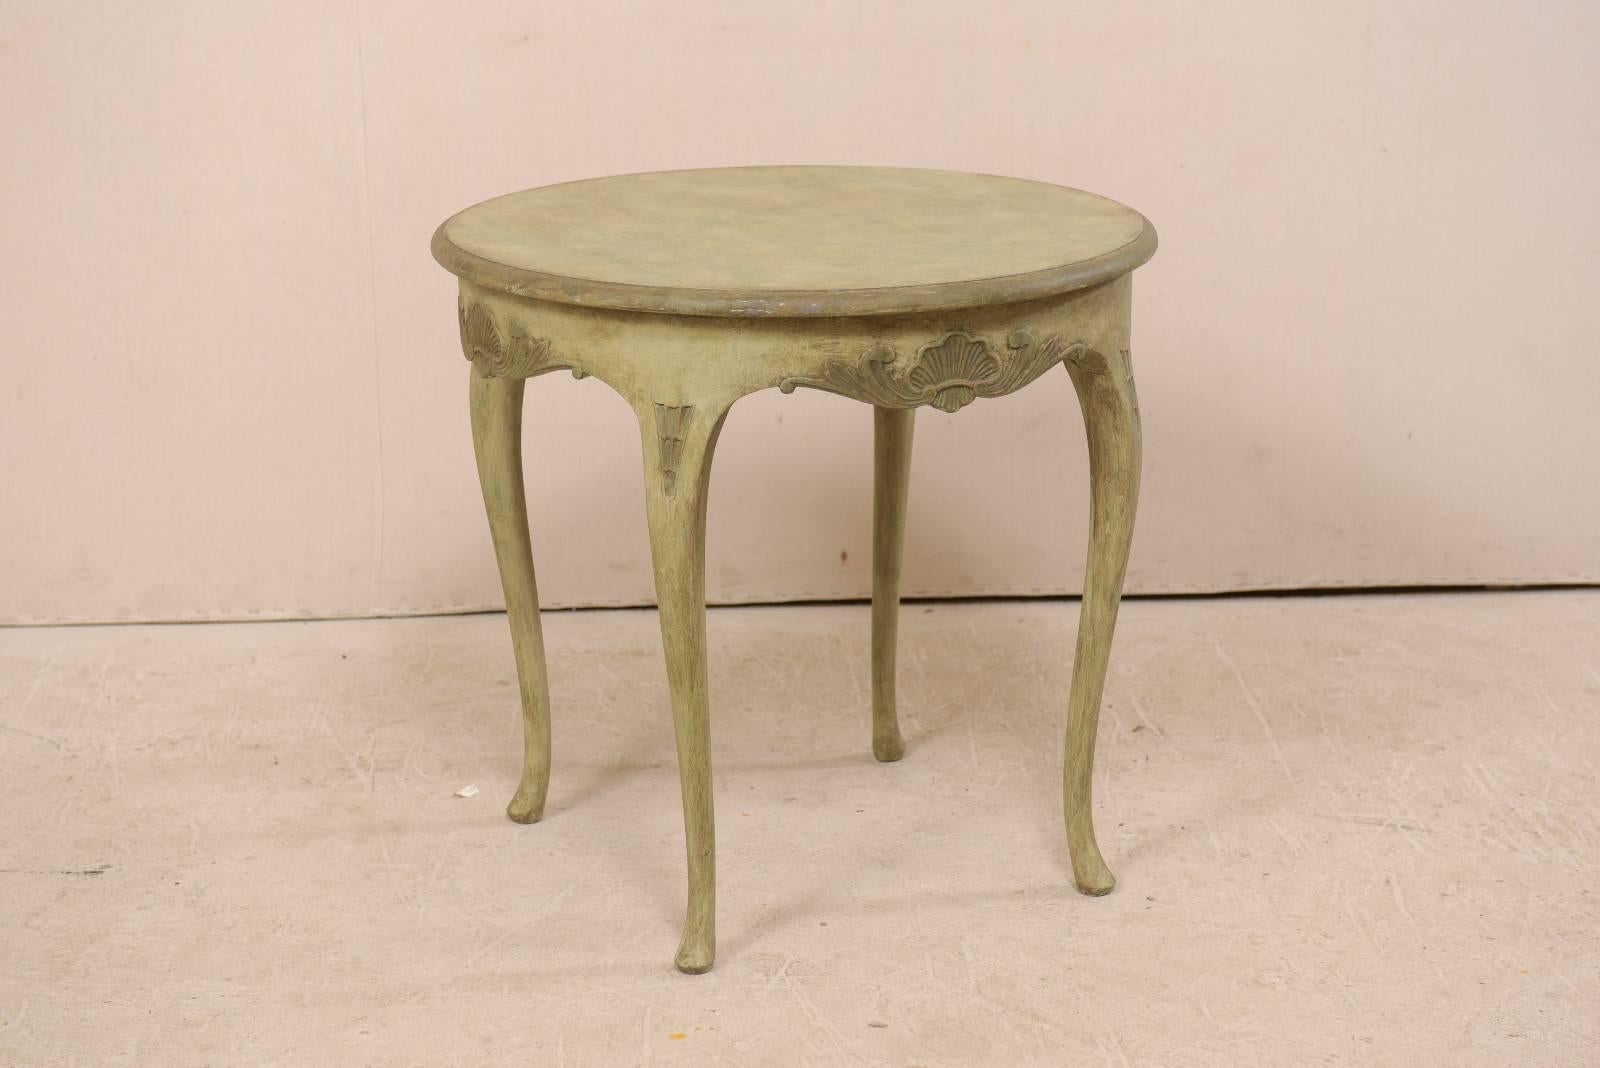 Table ronde en bois peint de style rococo suédois, datant du milieu du 20e siècle. Cette table suédoise vintage présente un plateau de forme circulaire avec un tablier joliment sculpté et légèrement festonné, orné de motifs de coquillages et de